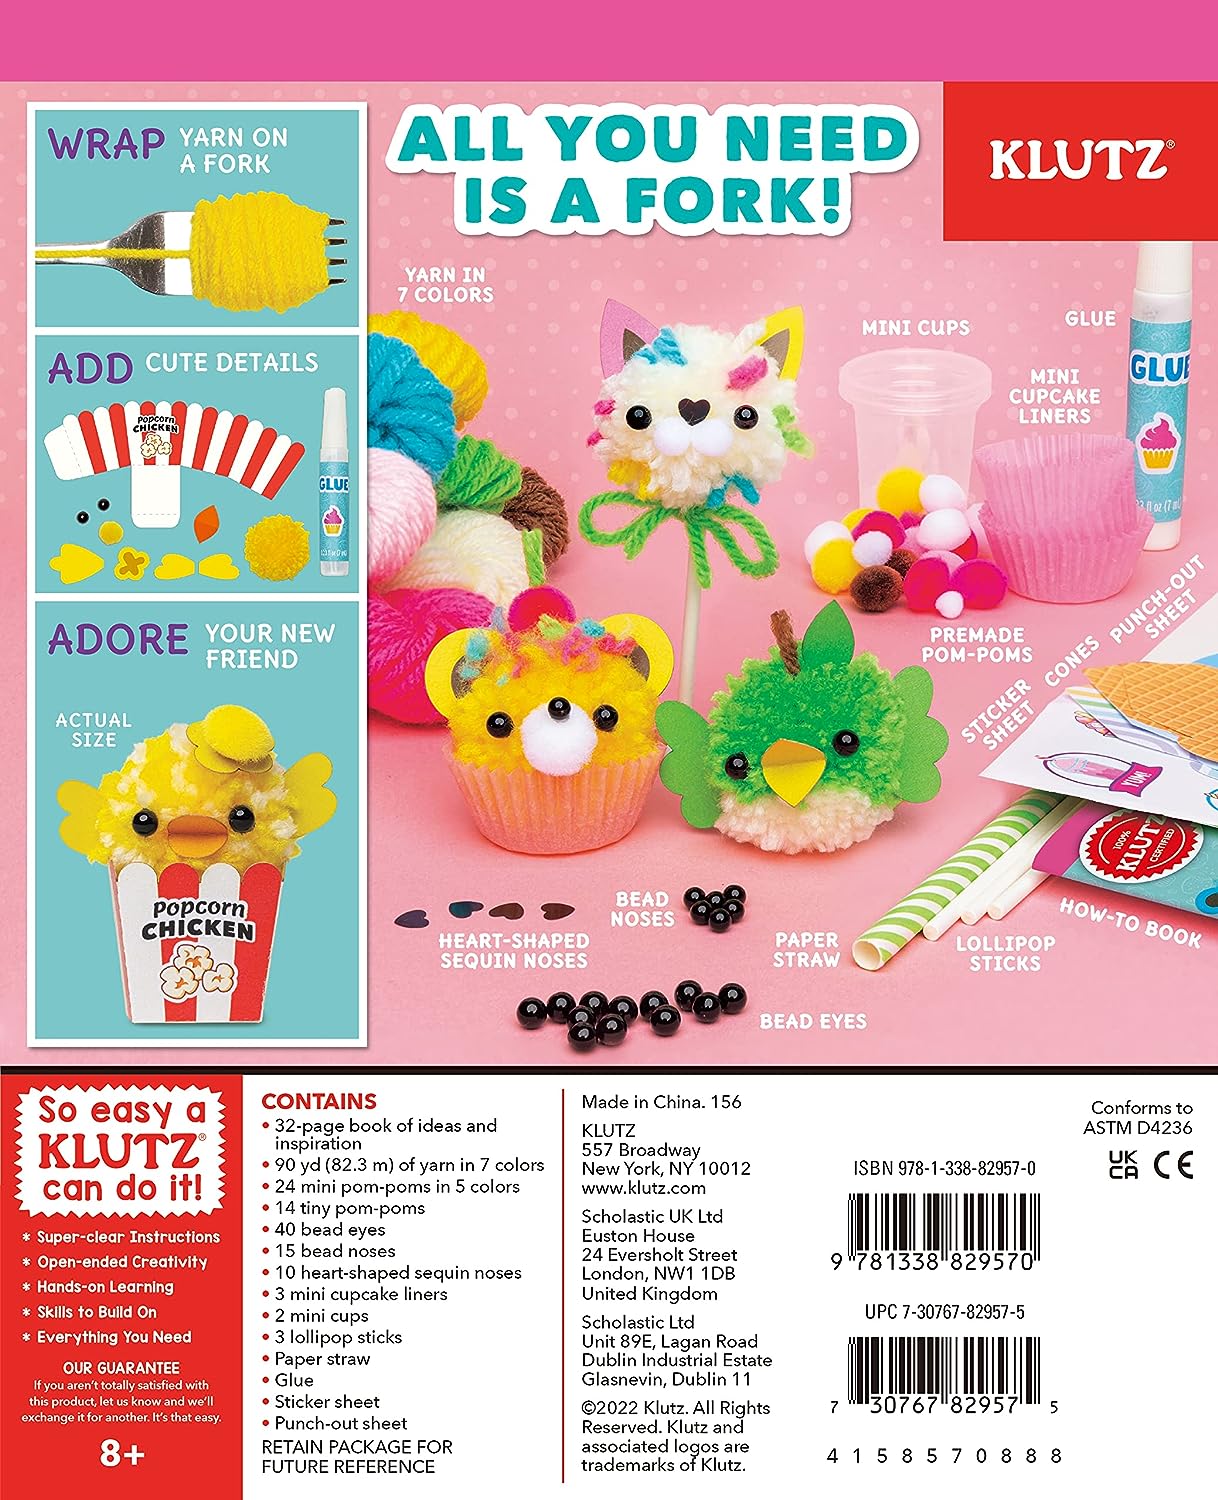 Klutz Mini Pom-Pom Food Animals - The English Bookshop Kuwait